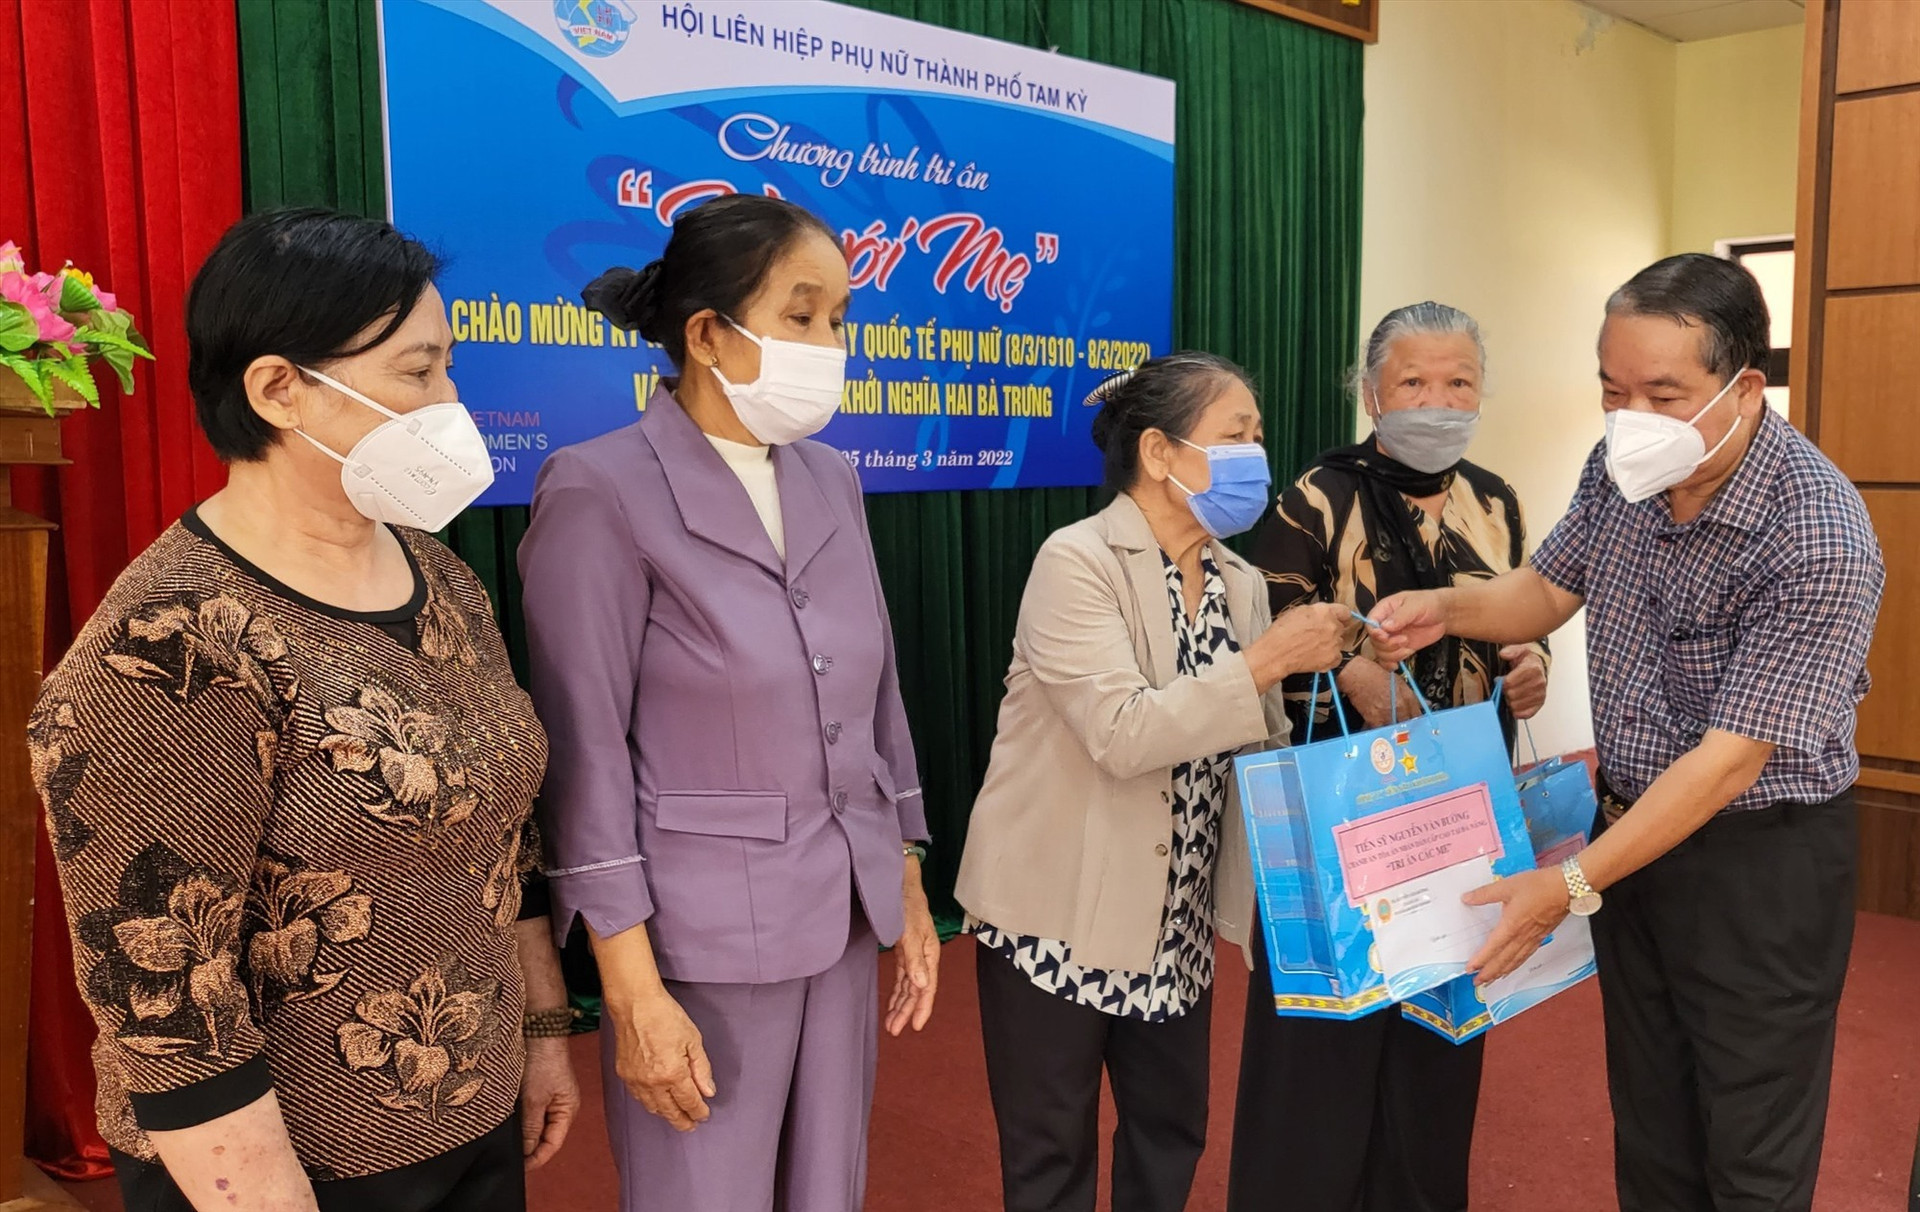 Ông Nguyễn Văn Bường trao tặng quà cho các mẹ, các cô đã tham gia chương trình Mẹ đỡ đầu, giai đoạn 1980 - 1985. Ảnh: M.L